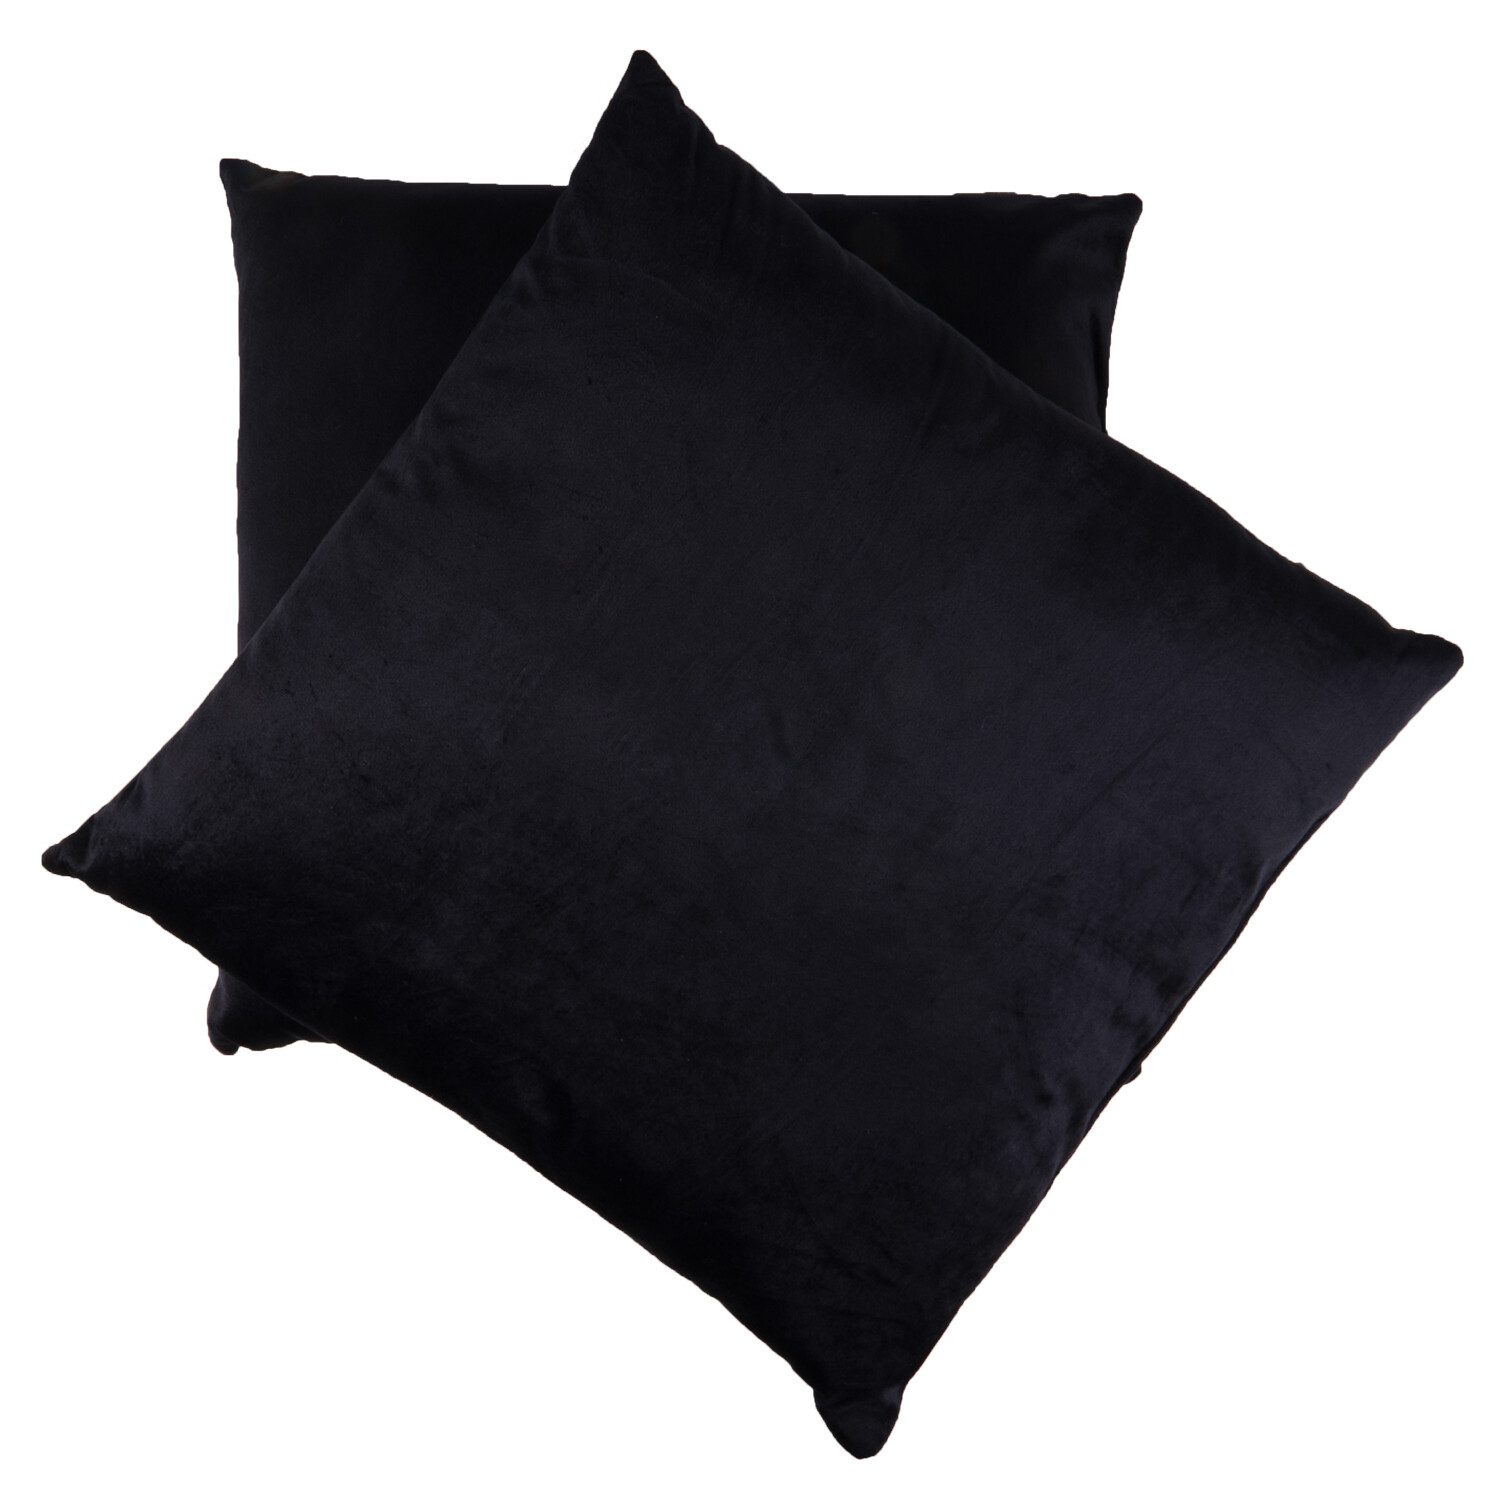 My Home Navy Velvet Cushion 43 x 43cm 2 Pack Image